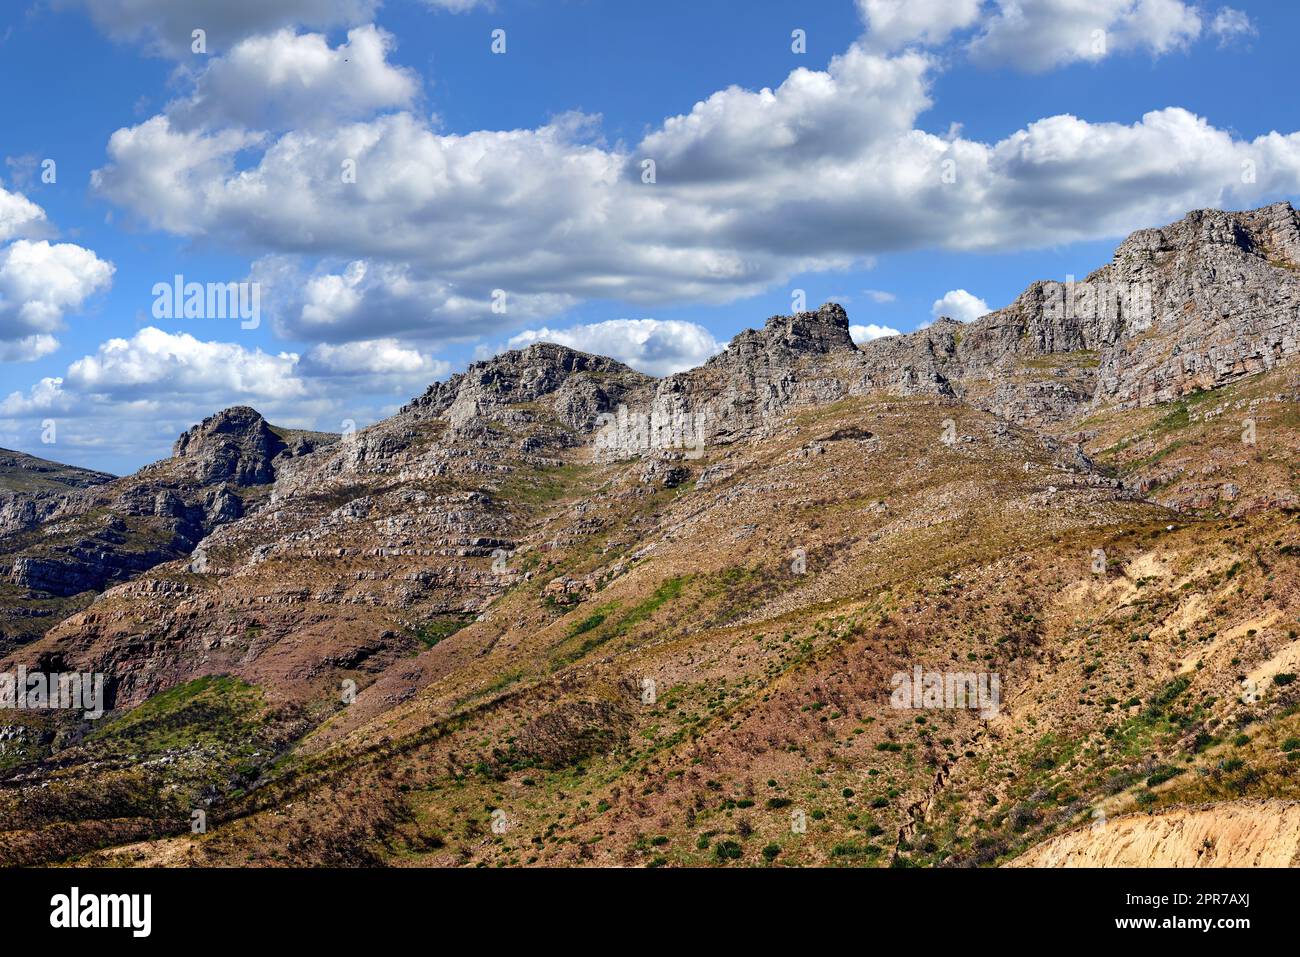 Landschaftsblick auf zwölf Apostel, Kapstadt im Westkap, Südafrika. Wunderschöne Landschaft einer beliebten Touristenattraktion während des Tages vor einem wolkigen blauen Himmel. Naturdenkmal für Wanderungen Stockfoto